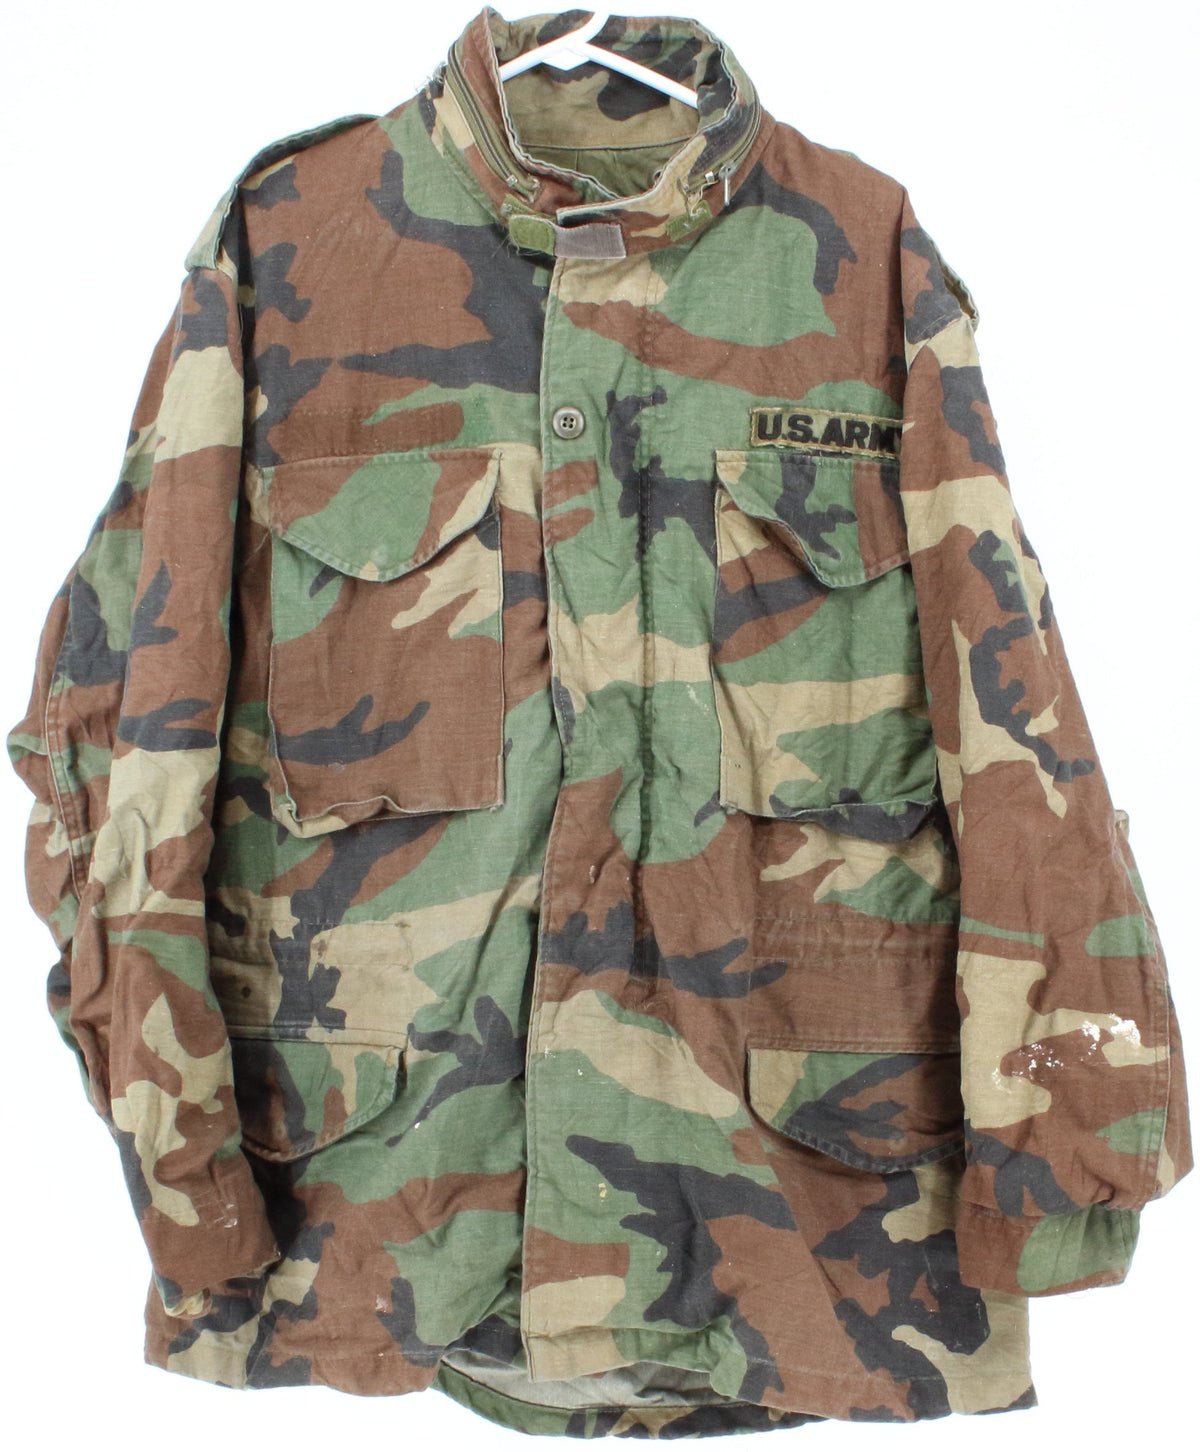 U.S. Army Camo Men's Jacket